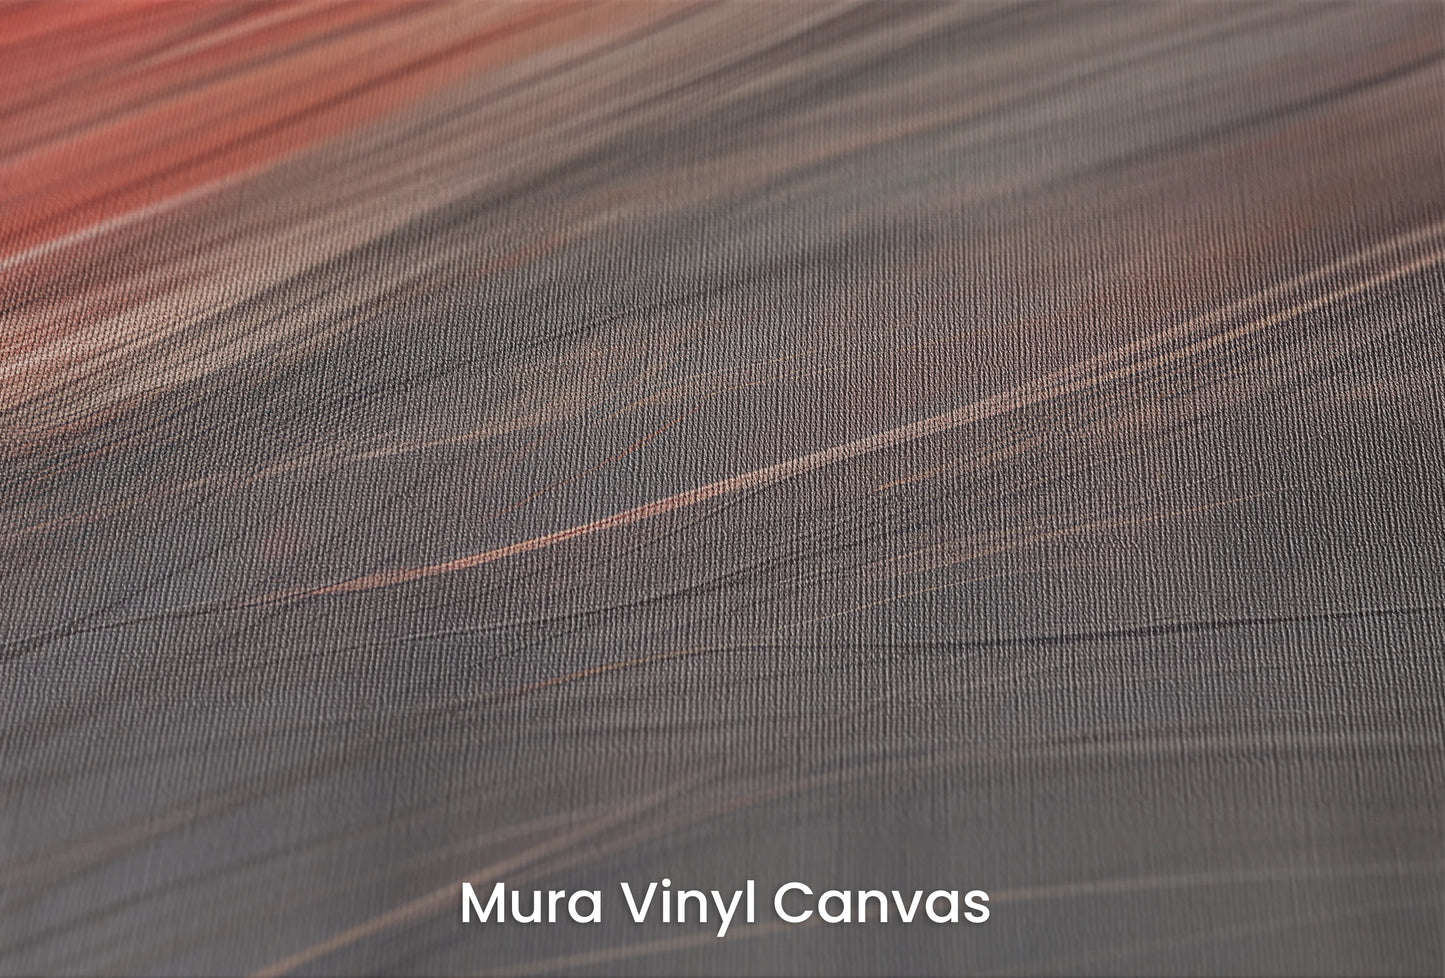 Zbliżenie na artystyczną fototapetę o nazwie Blaze of Glory na podłożu Mura Vinyl Canvas - faktura naturalnego płótna.